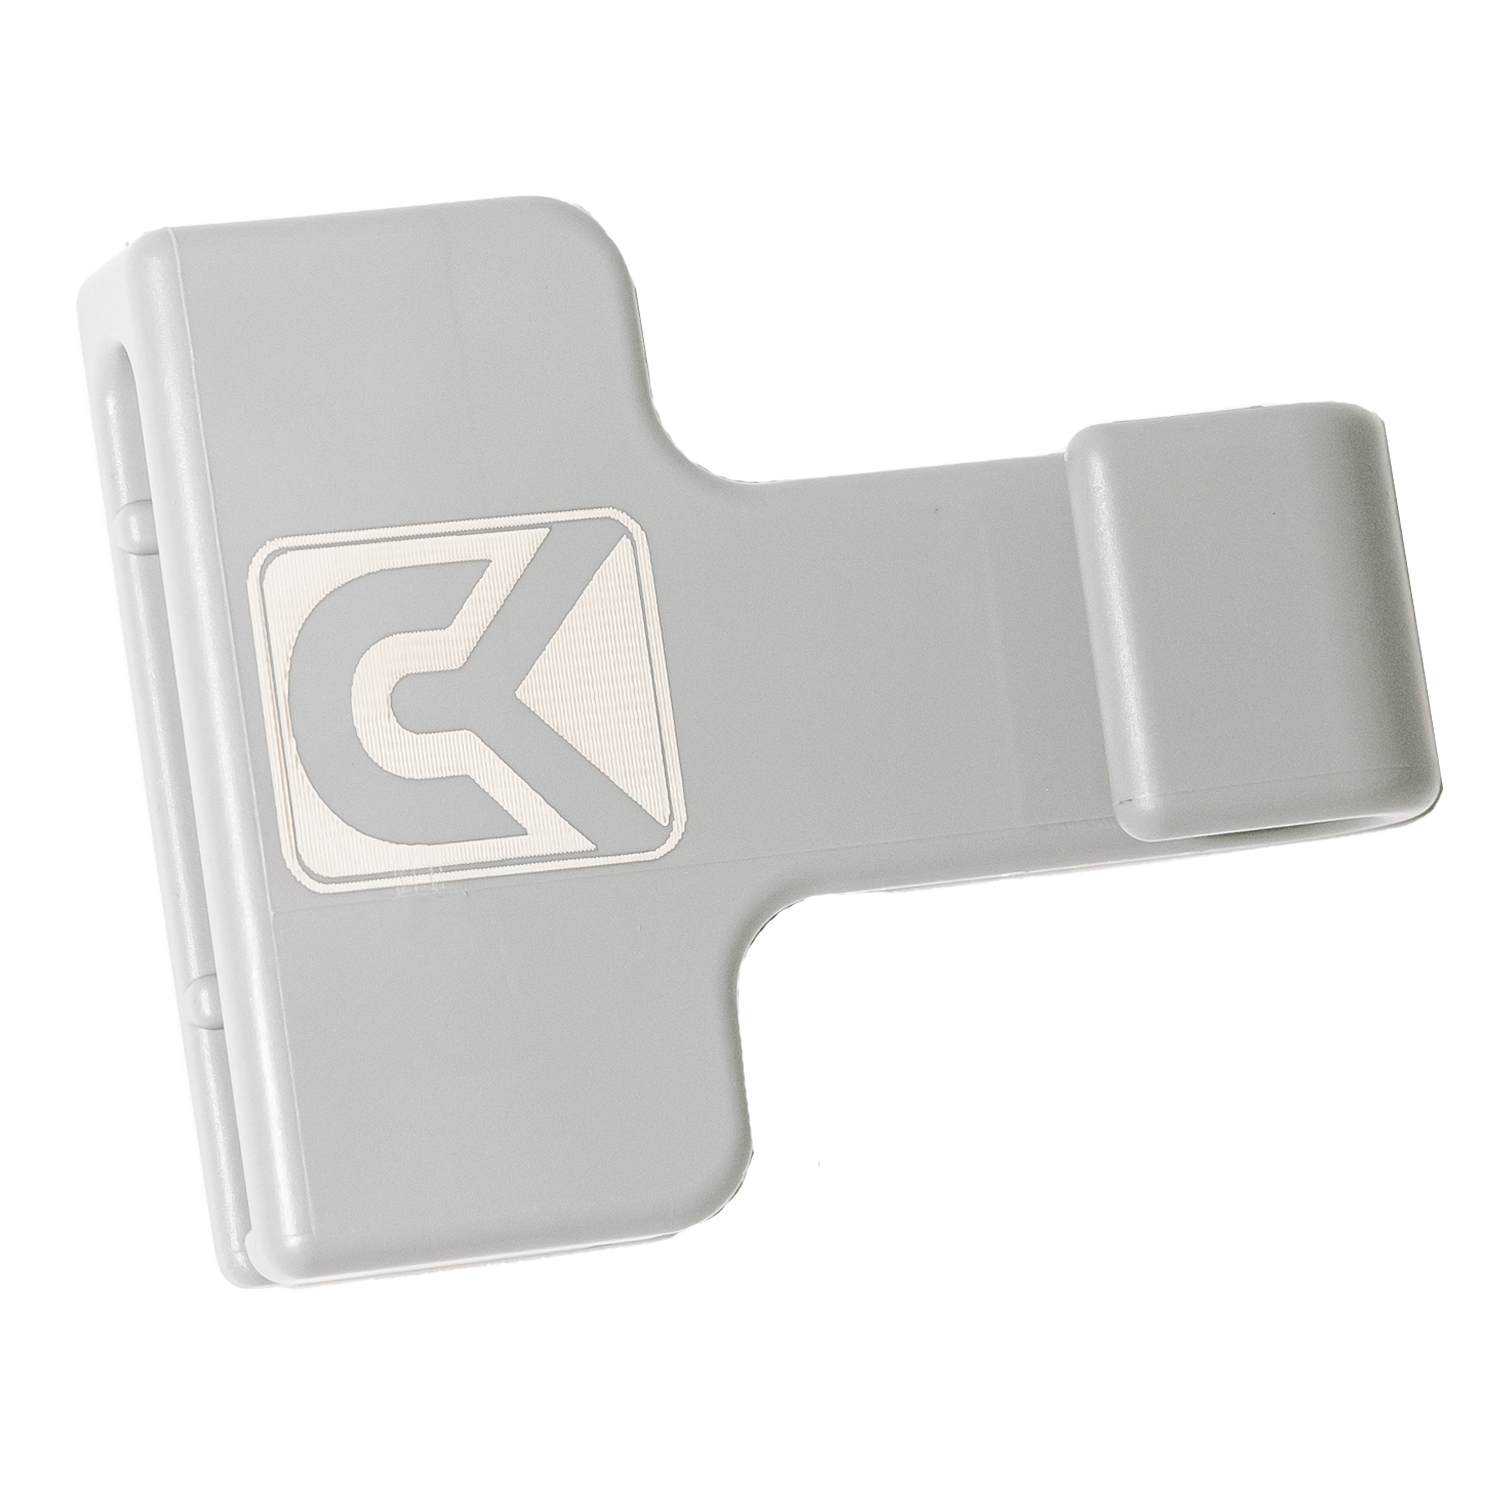 CarryKeeper Single Pack - GUNMETAL